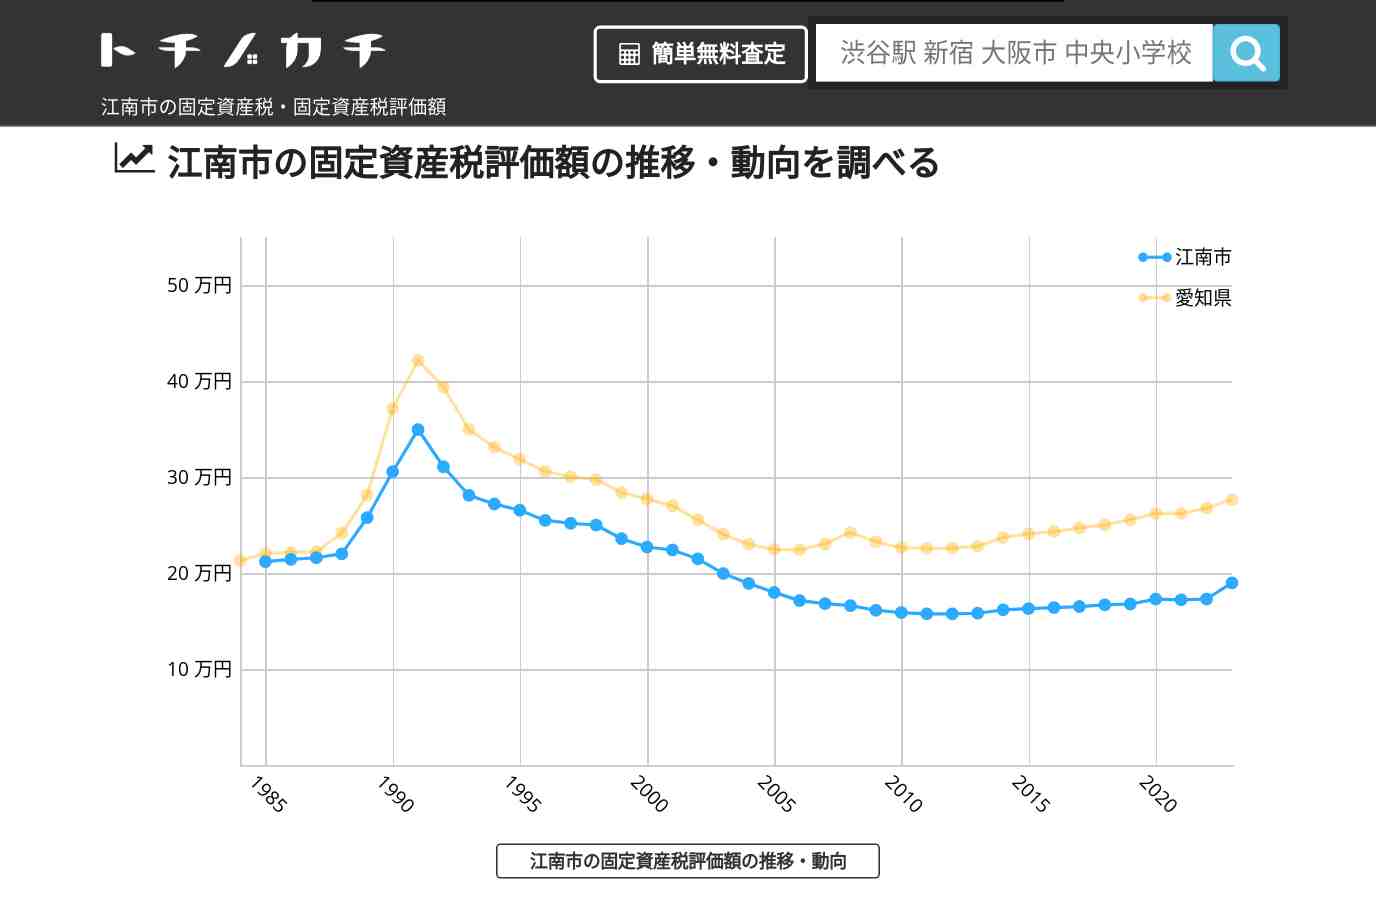 西部中学校(愛知県 江南市)周辺の固定資産税・固定資産税評価額 | トチノカチ